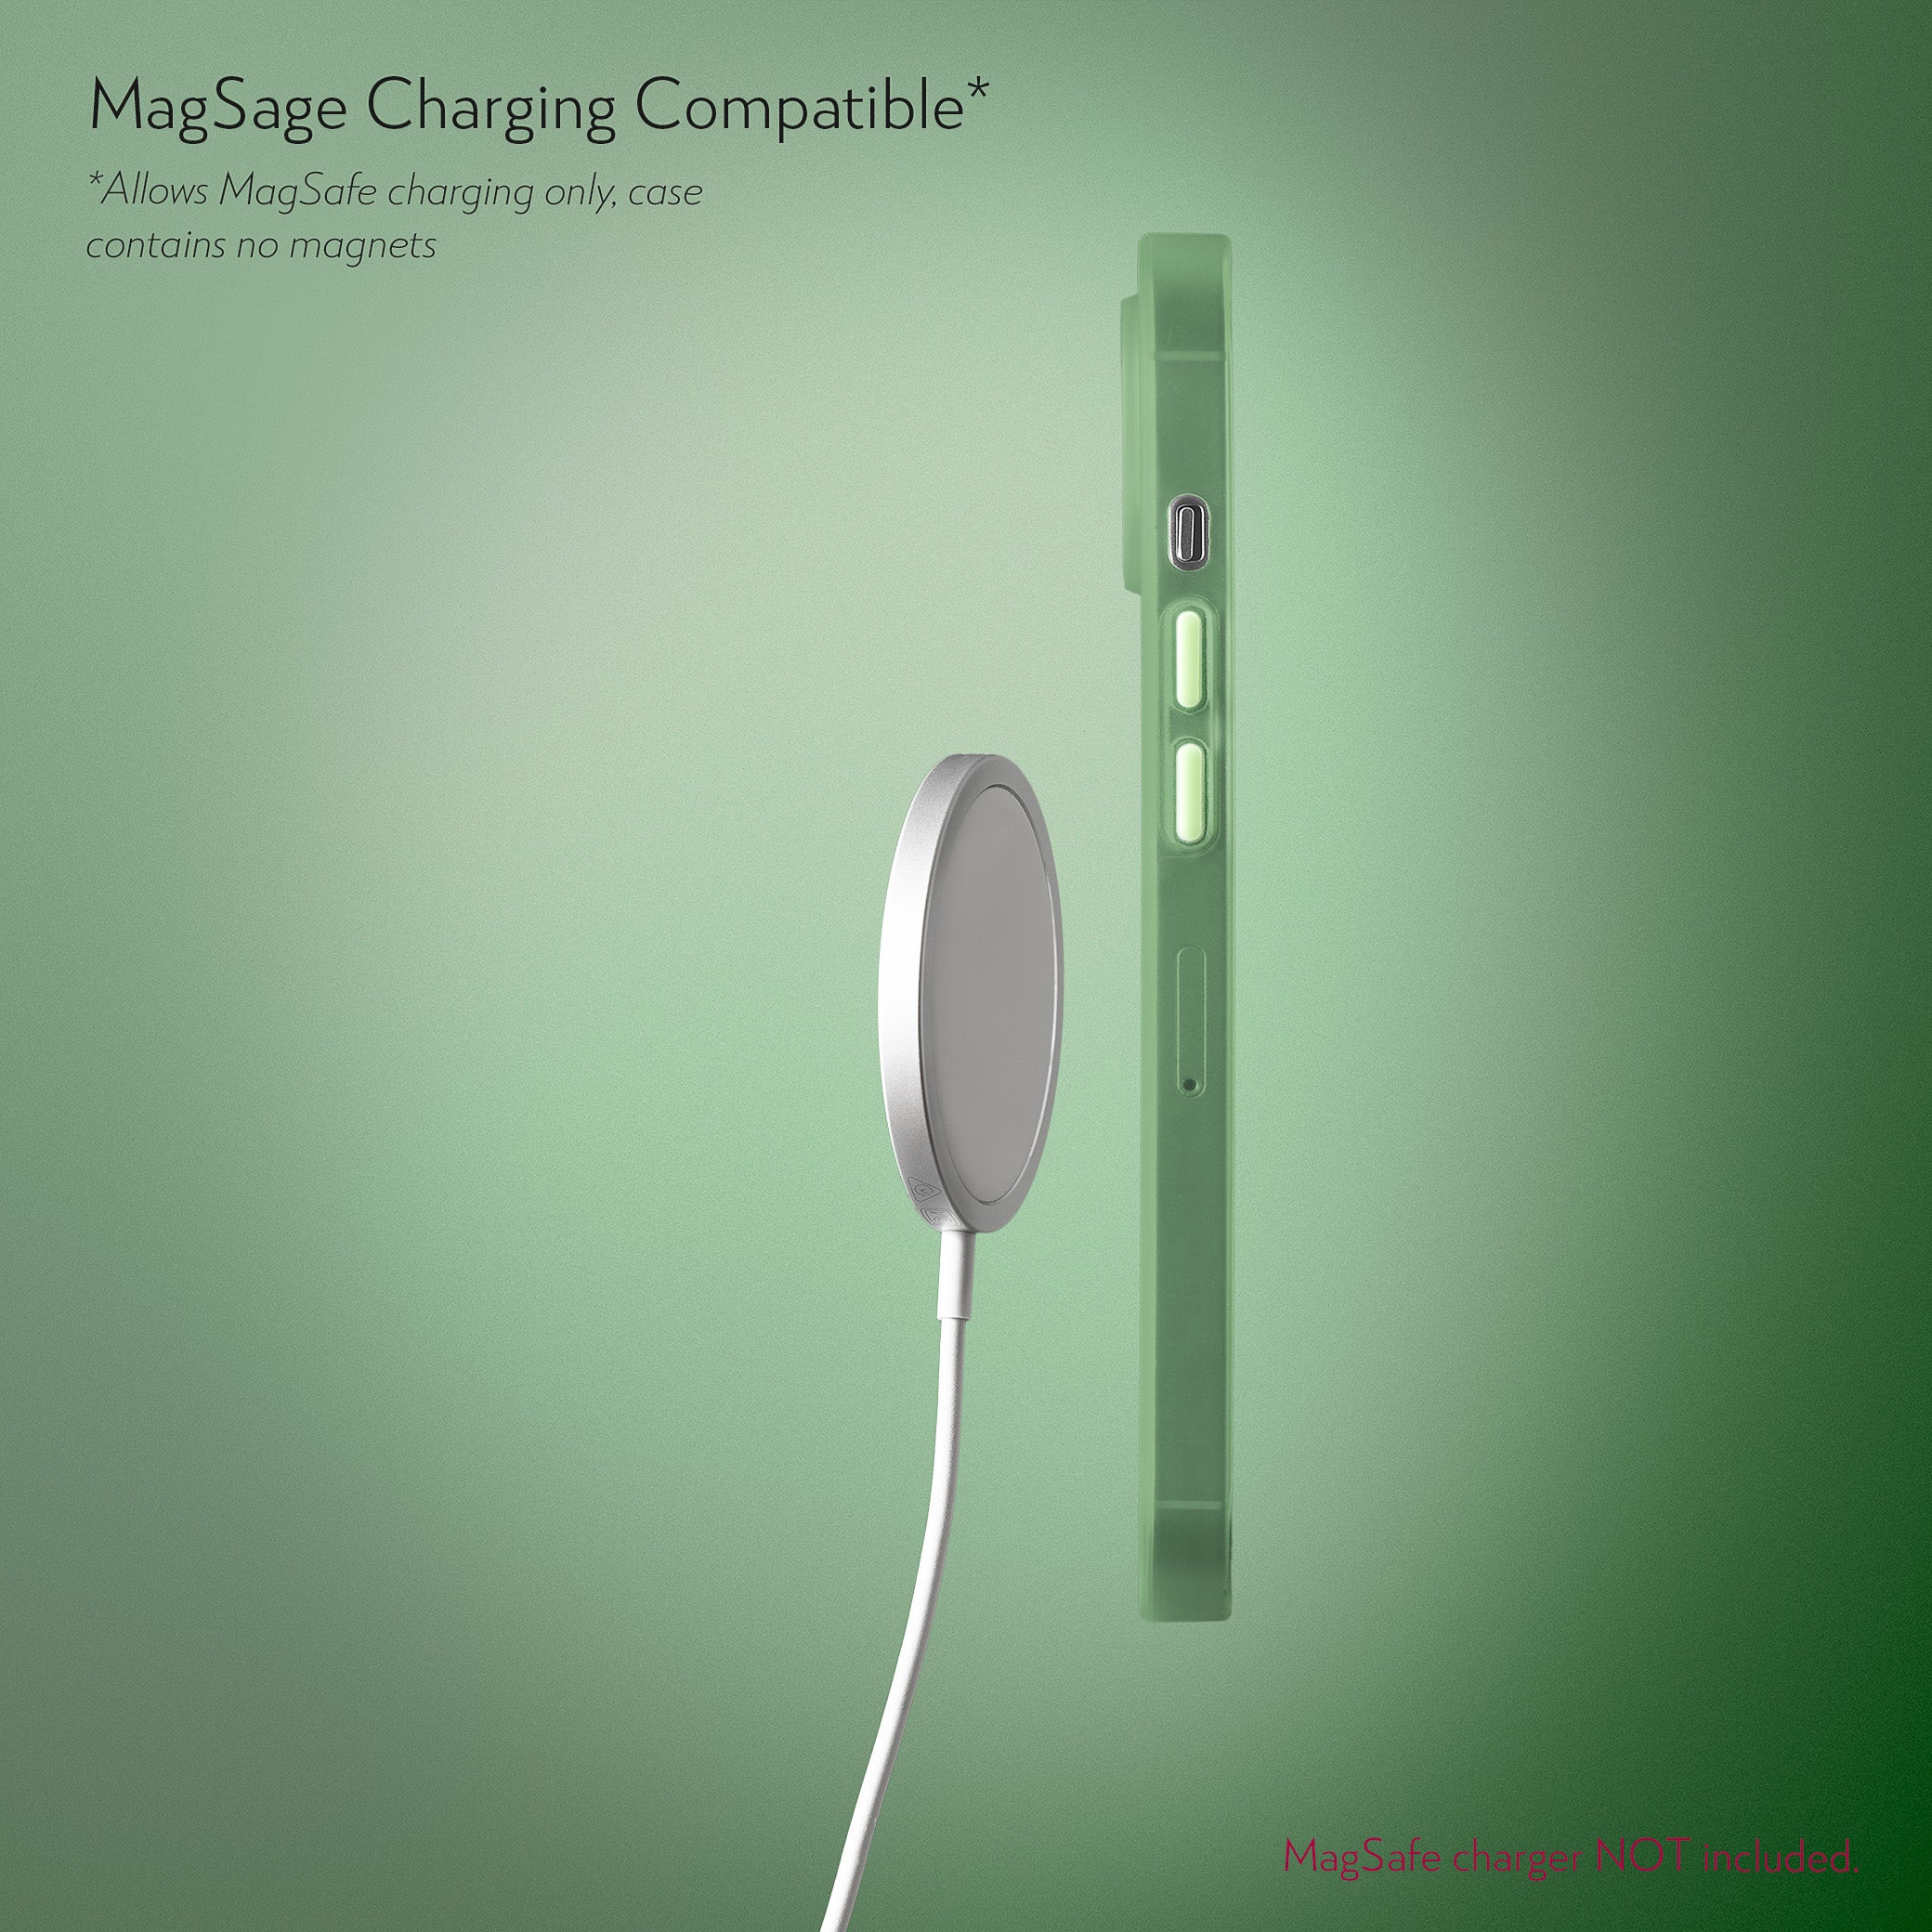 Super Slim Case 2.0 for iPhone 13 Mini - Avacado Green